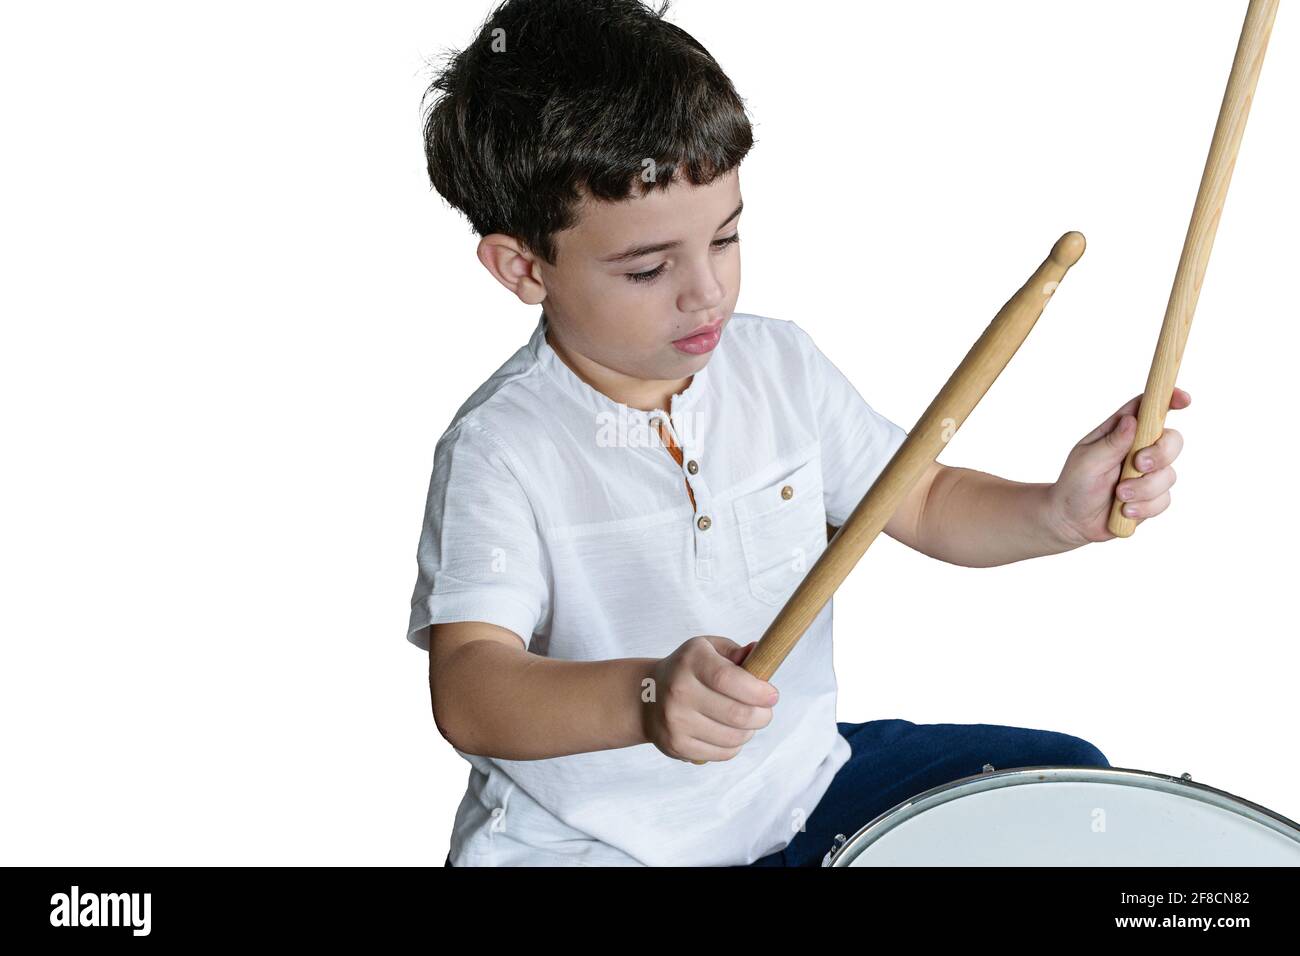 niño de 7 años con sus palitos listos para tocar los tambores. Fondo blanco. Foto de stock